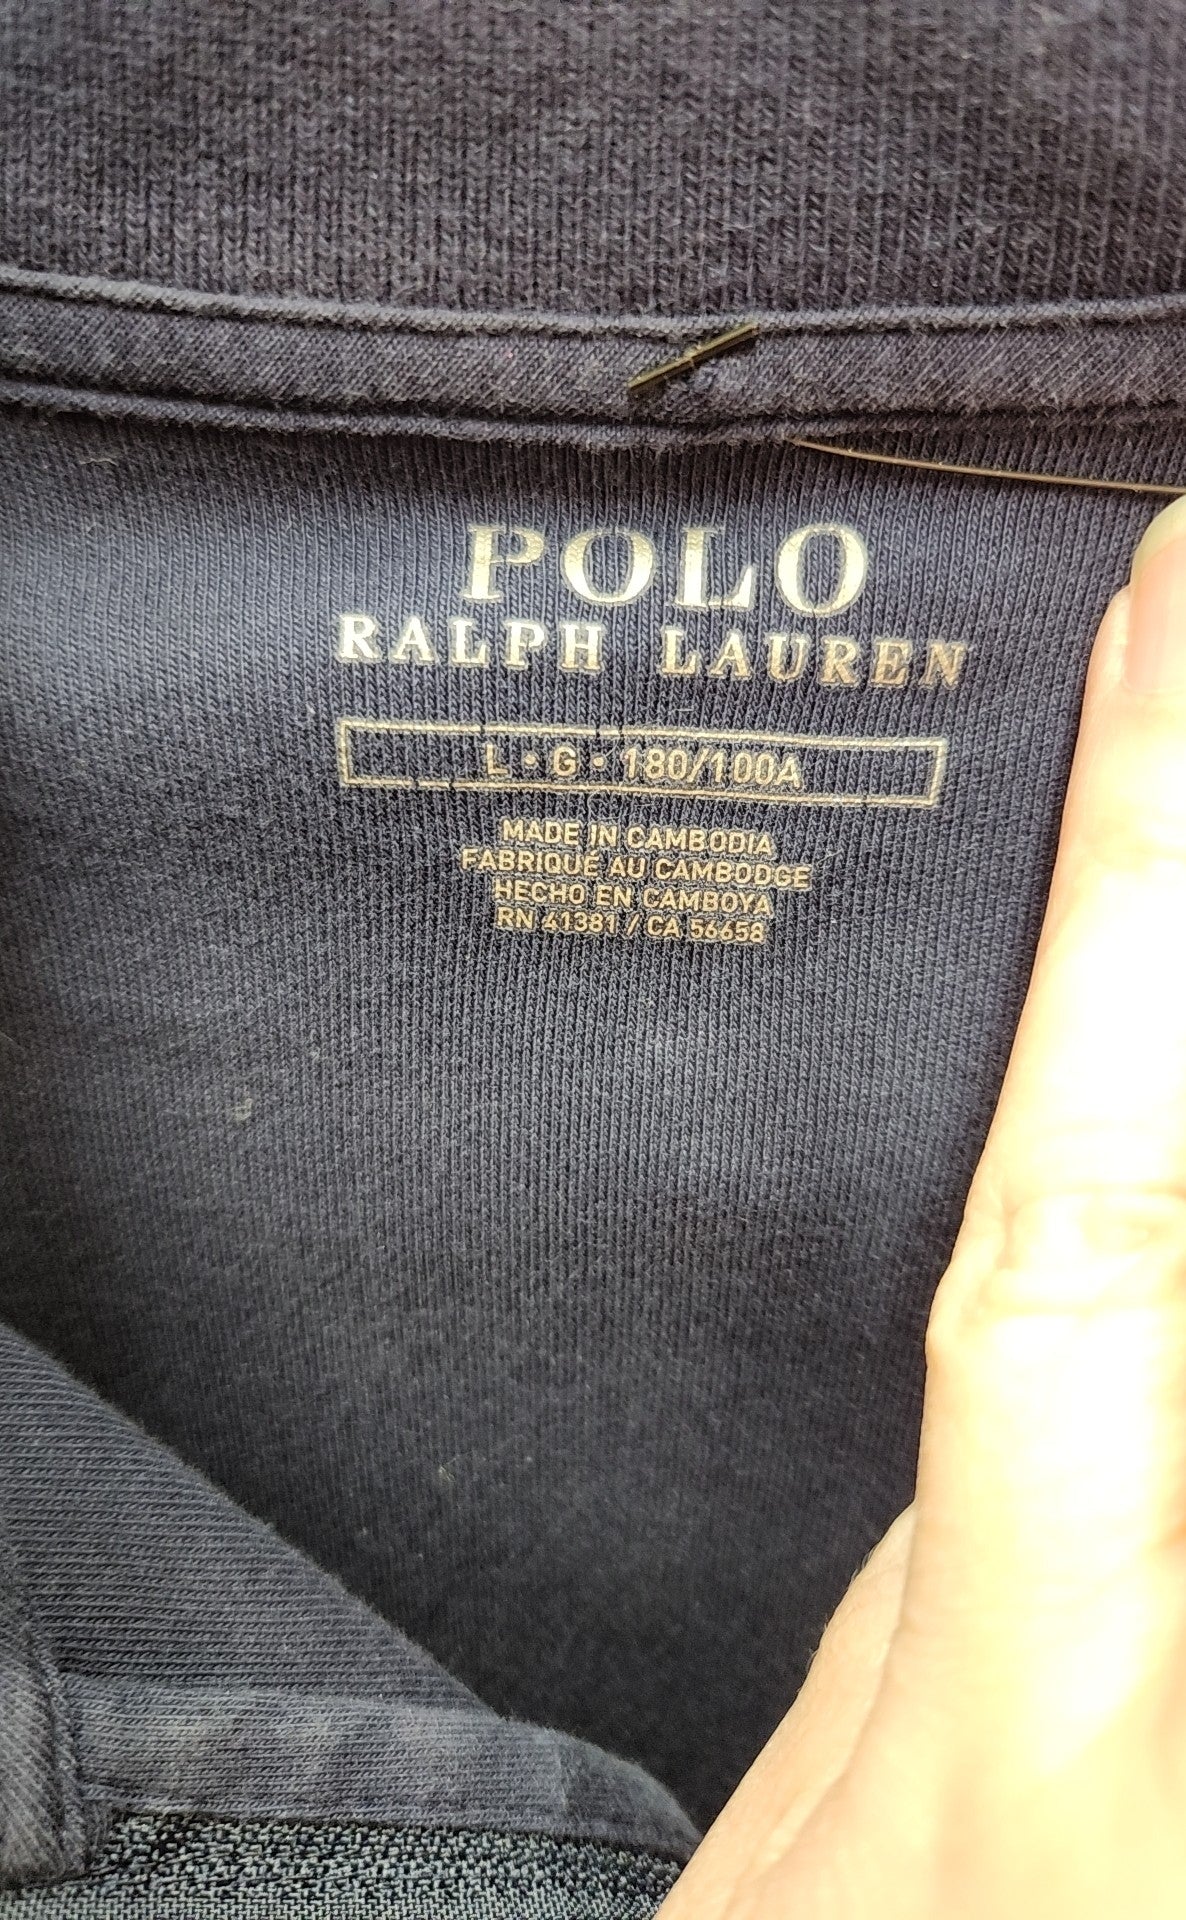 Polo by Ralph Lauren Men's Size L Navy Sweatshirt Zip Jacket w/Zip Pockets